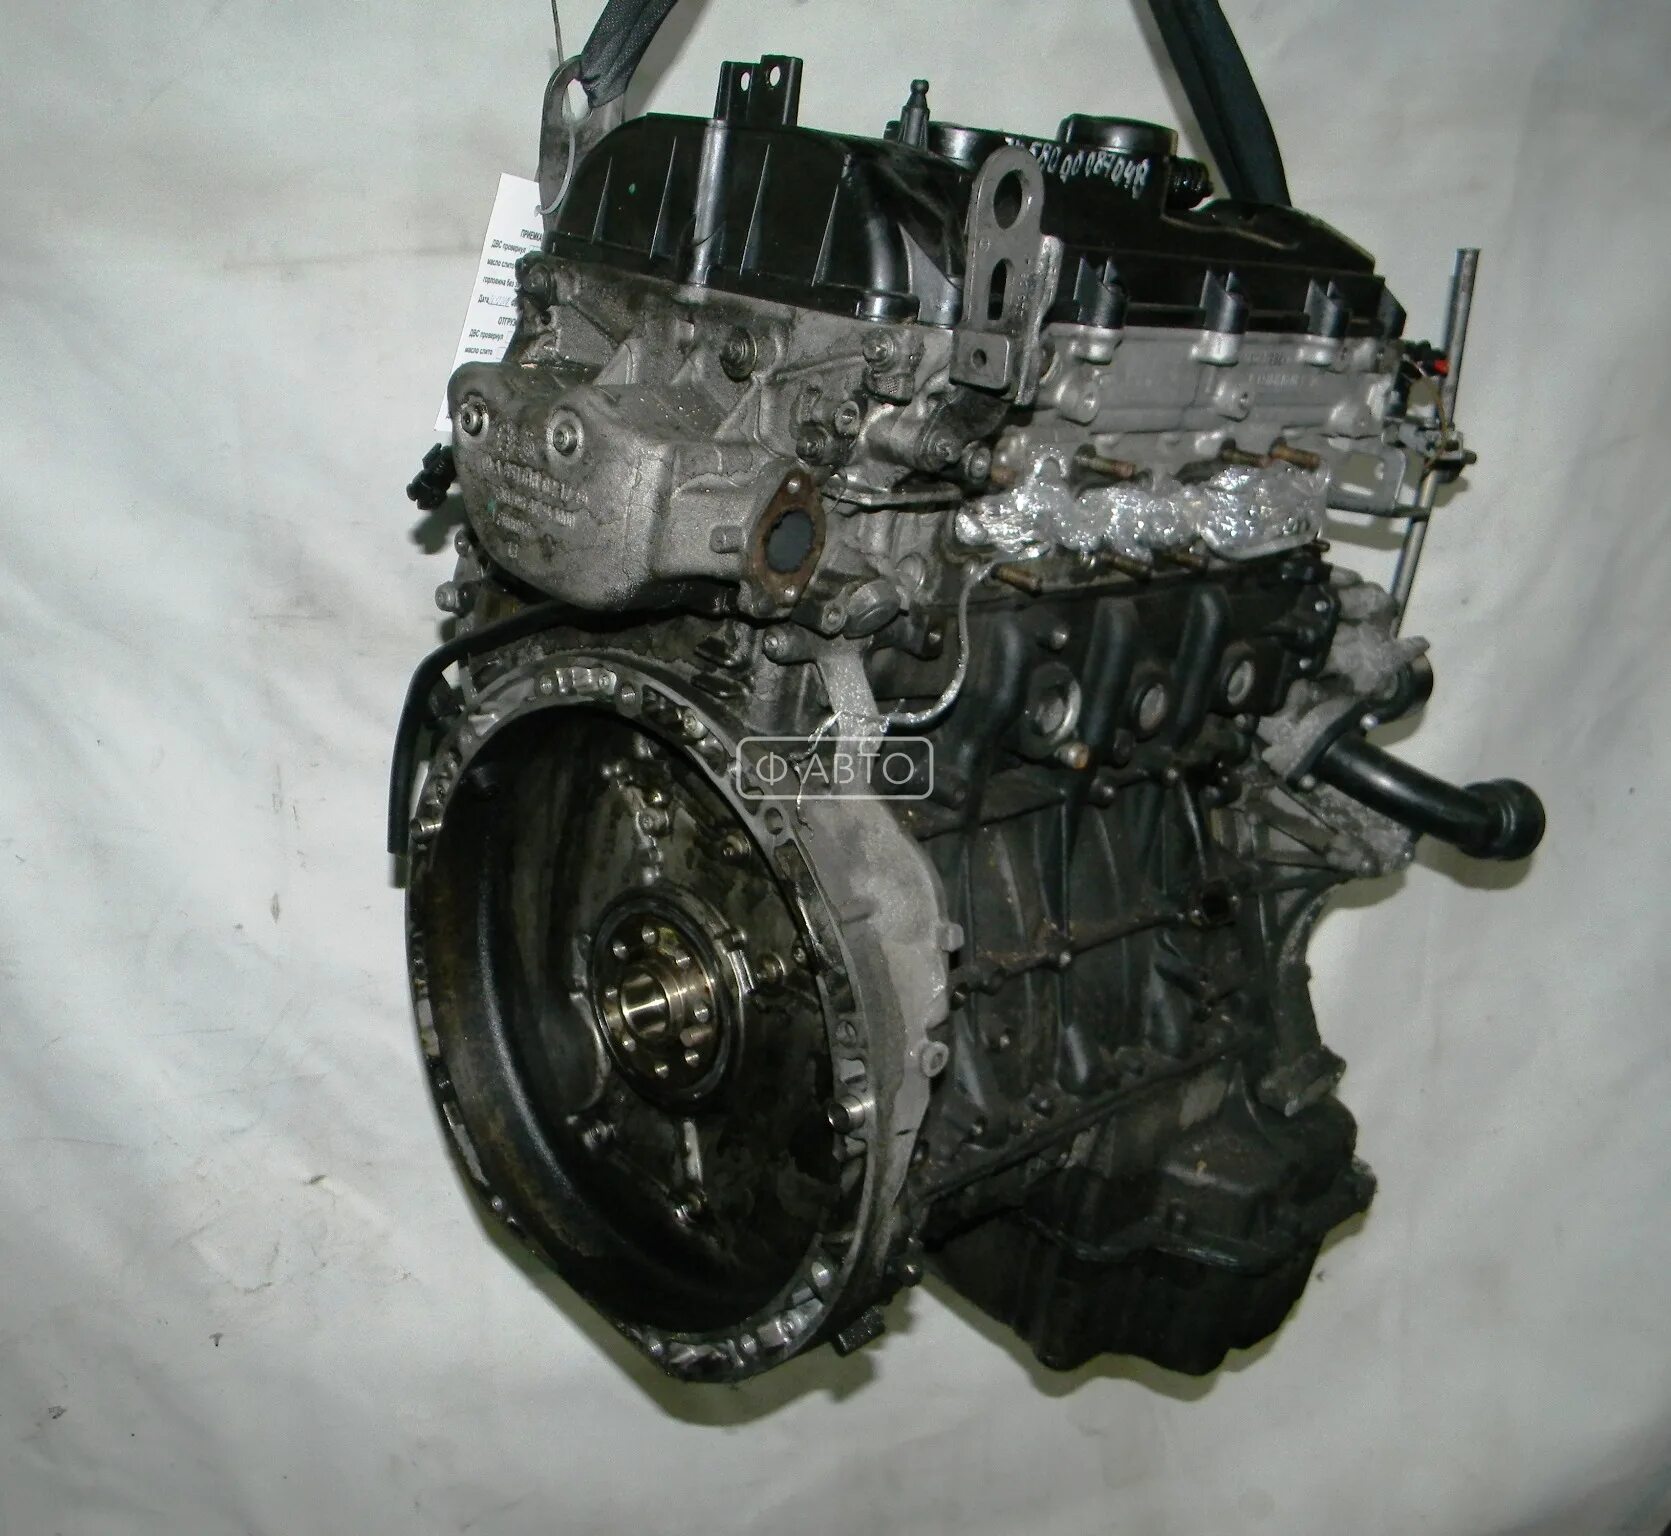 Мотор Мерседес Спринтер 2.2 дизель. Двигатель Мерседес Спринтер 2.2. Мотор Спринтер 651. Двигатель Мерседес Спринтер 2 CDI двигатель.